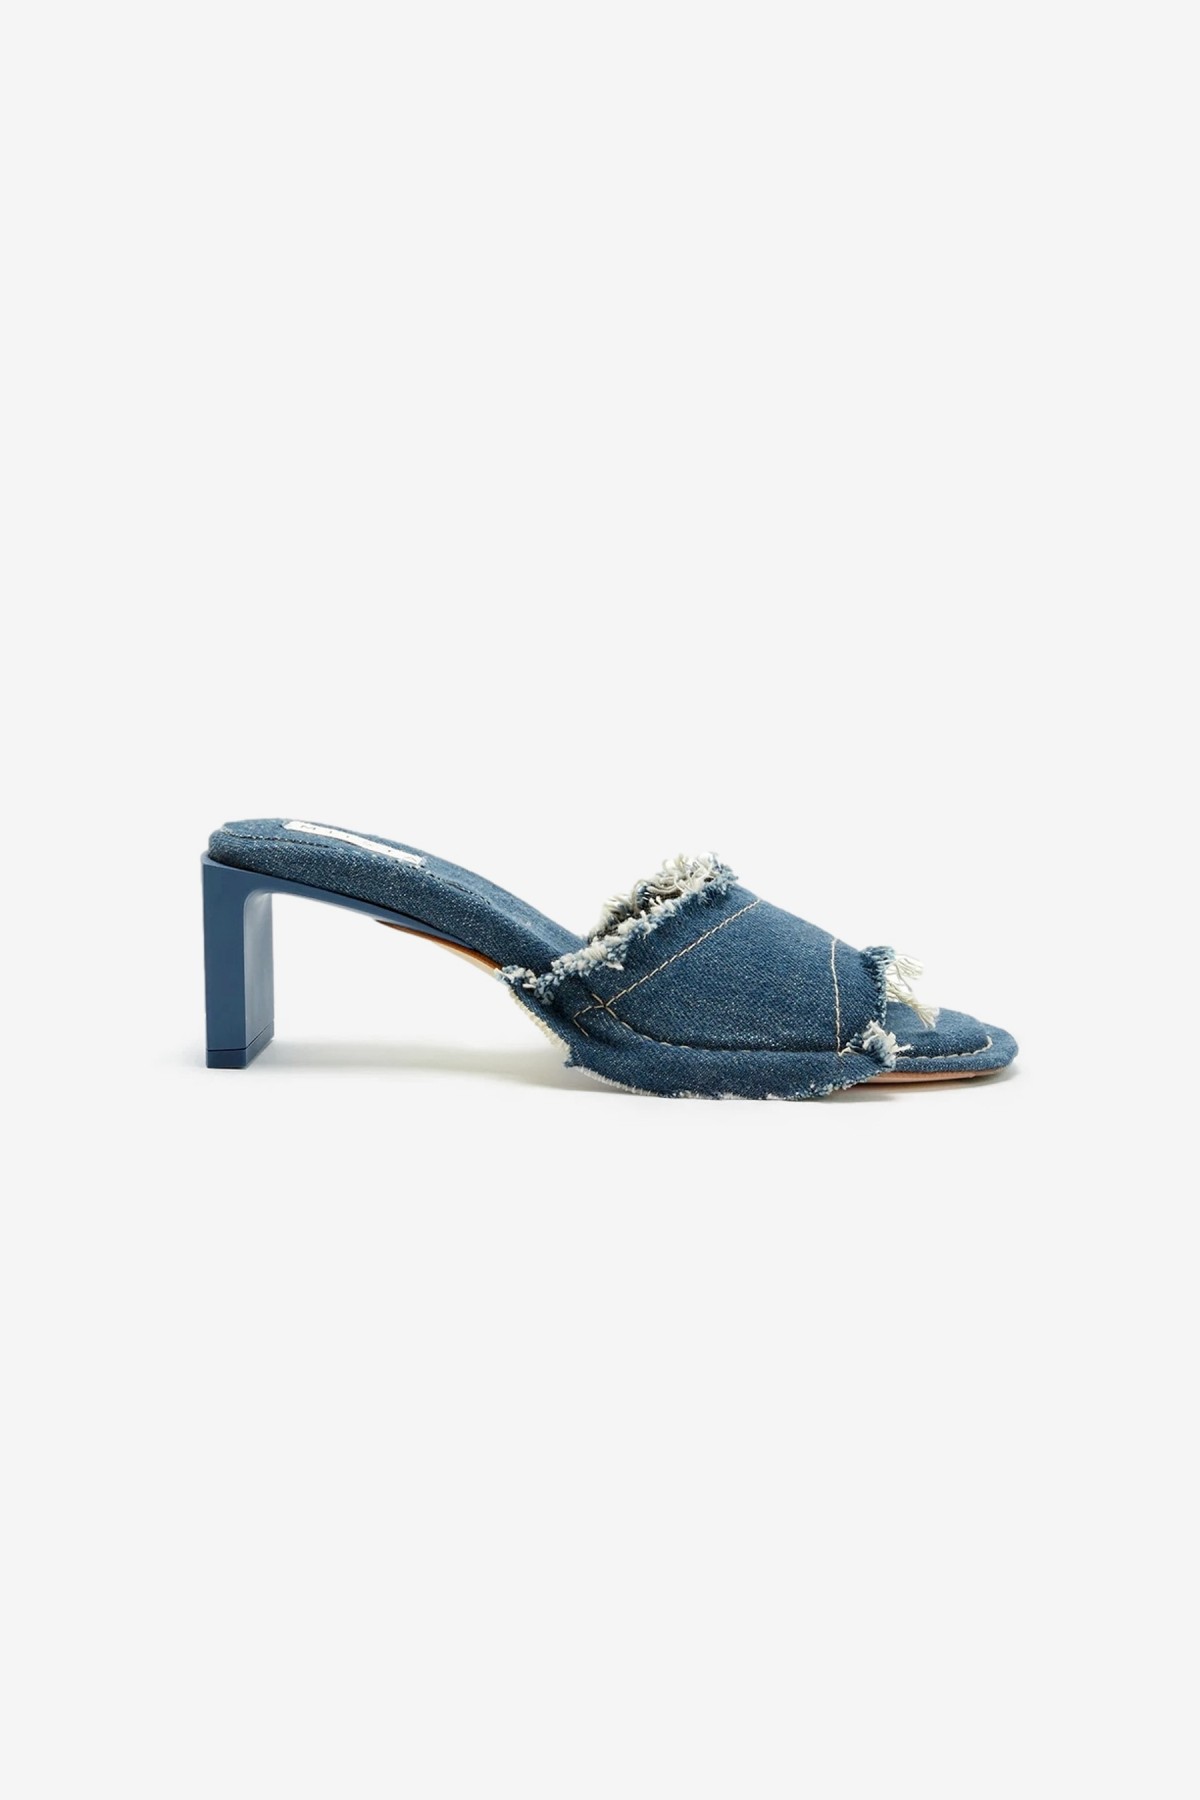 Miista Marguerite Denim Sandals in Blue